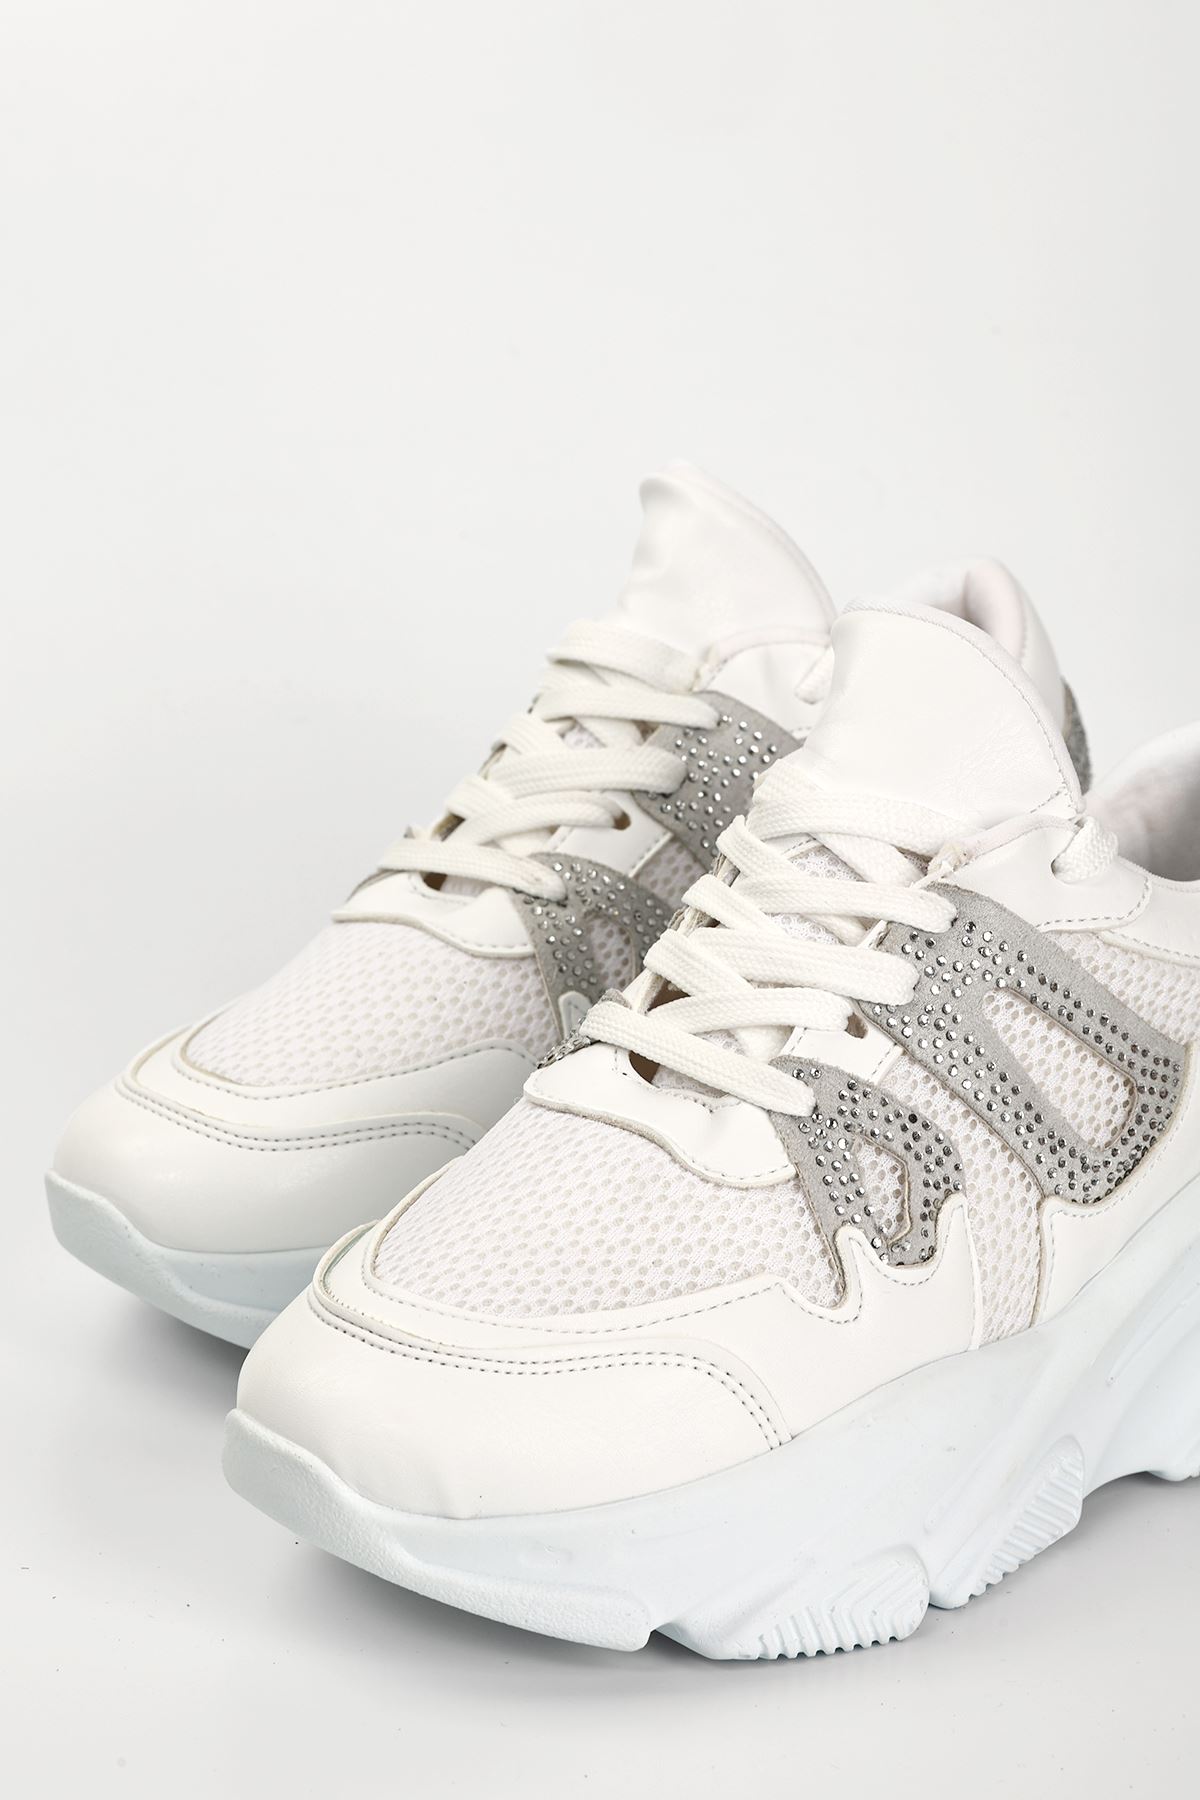 Nexxon Taş Detaylı Bağcıklı Kadın Spor Ayakkabı Beyaz